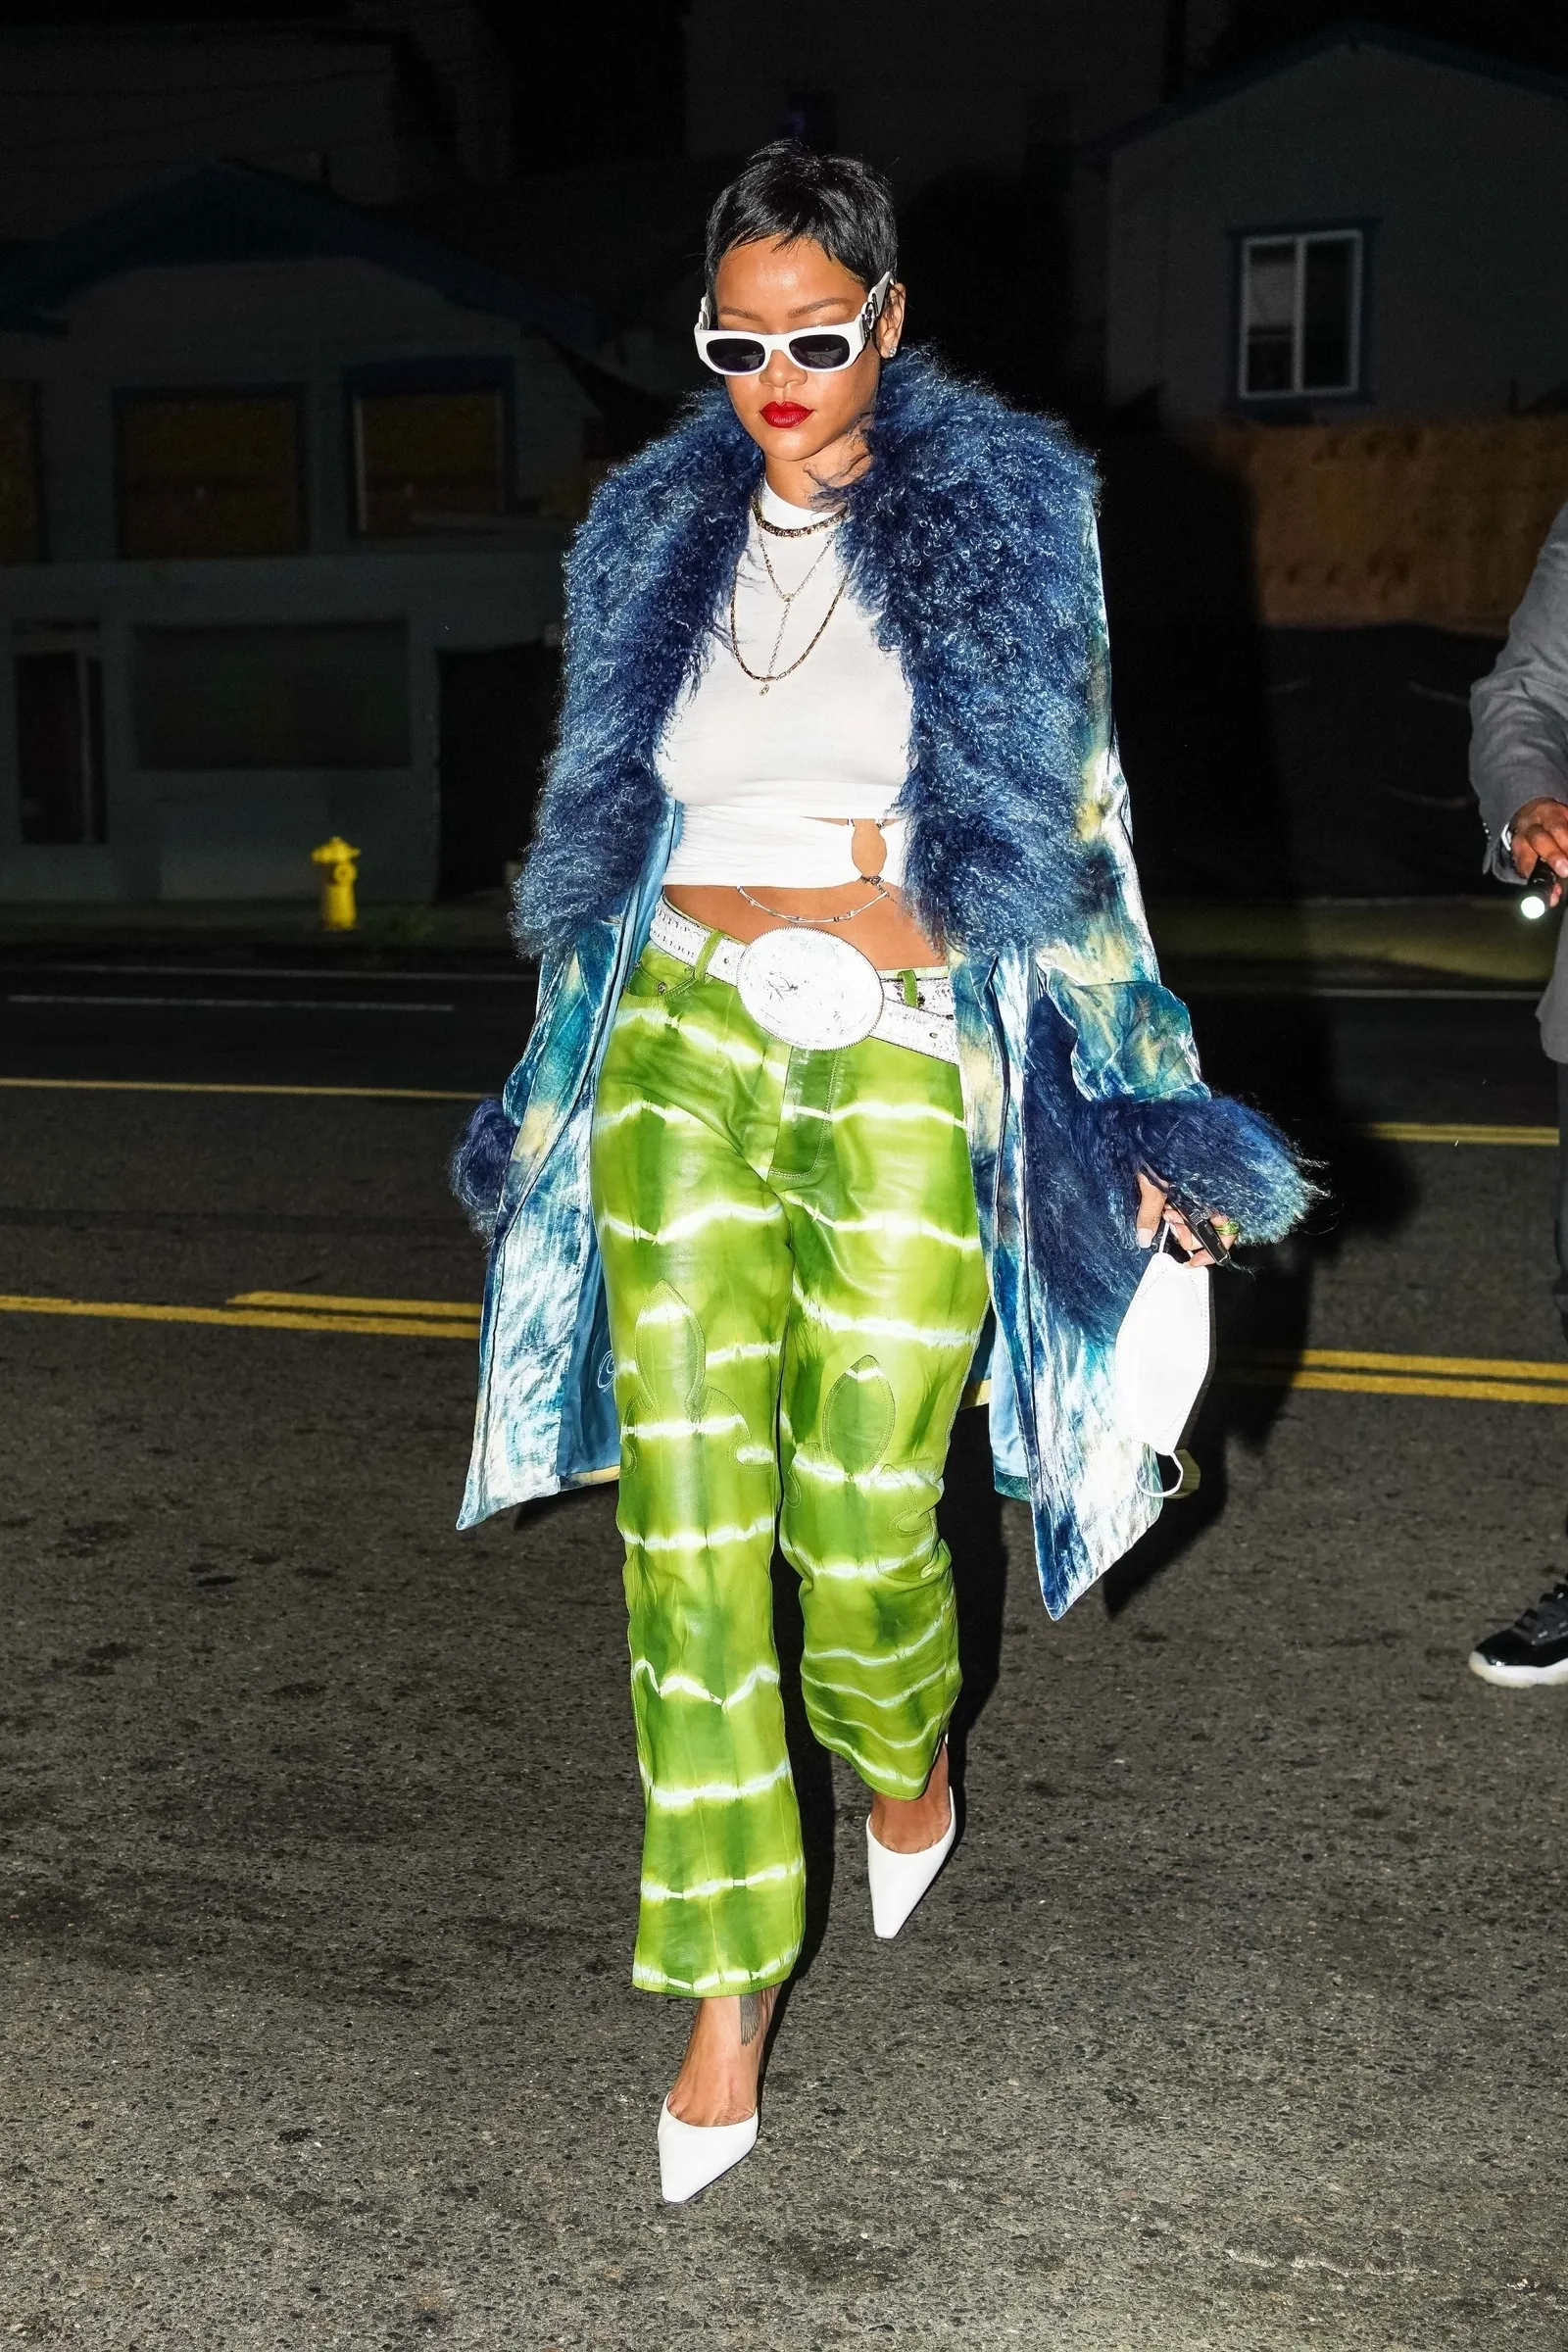 Kece! Intip Gaya Street Style Rihanna dengan Warna Cerah di 2021